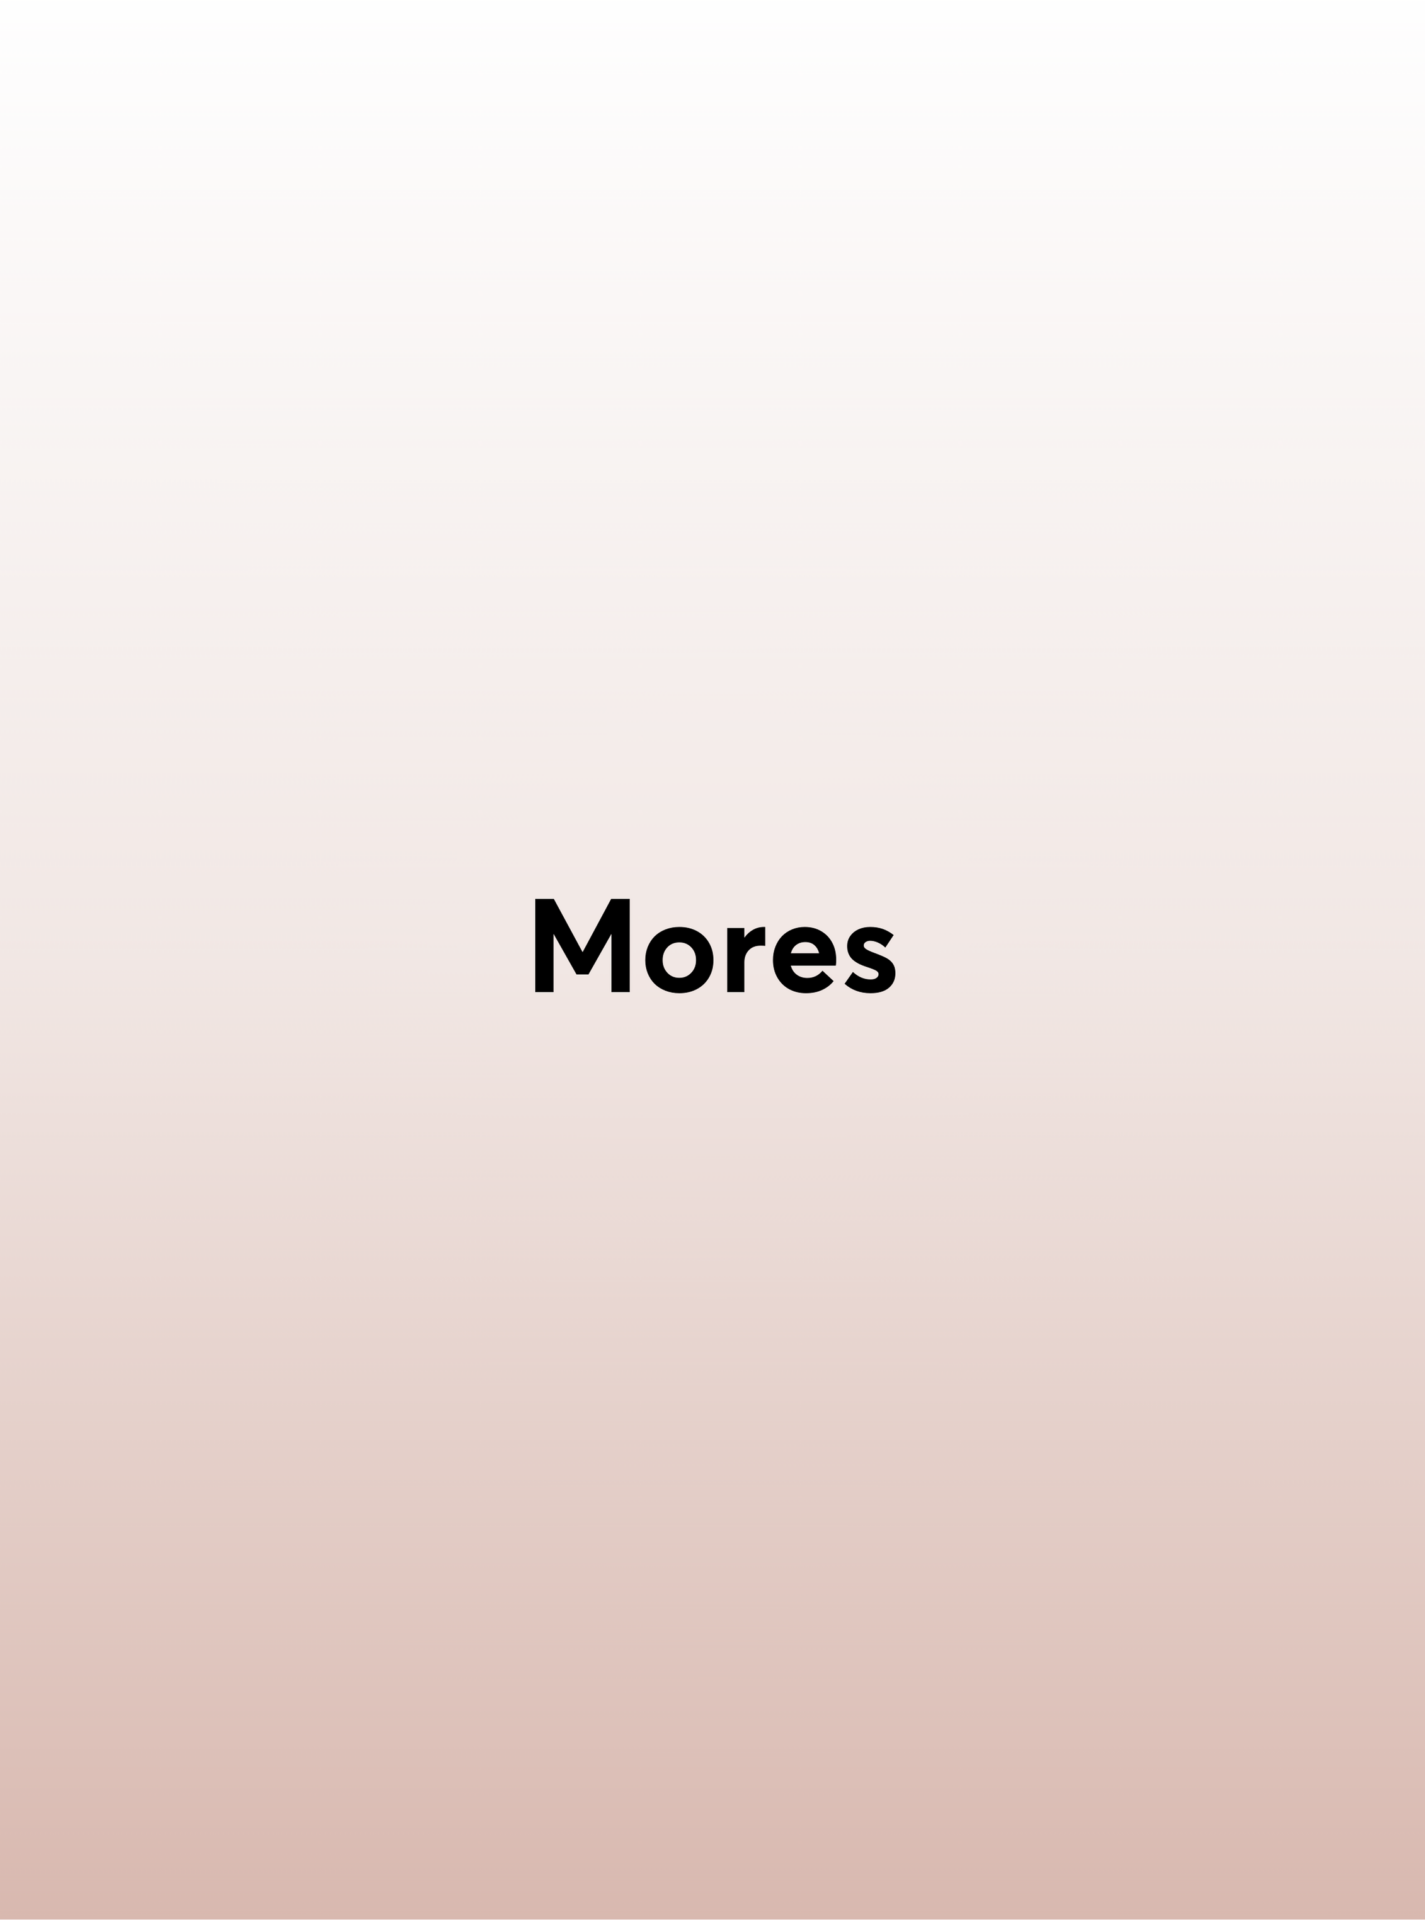 Mores